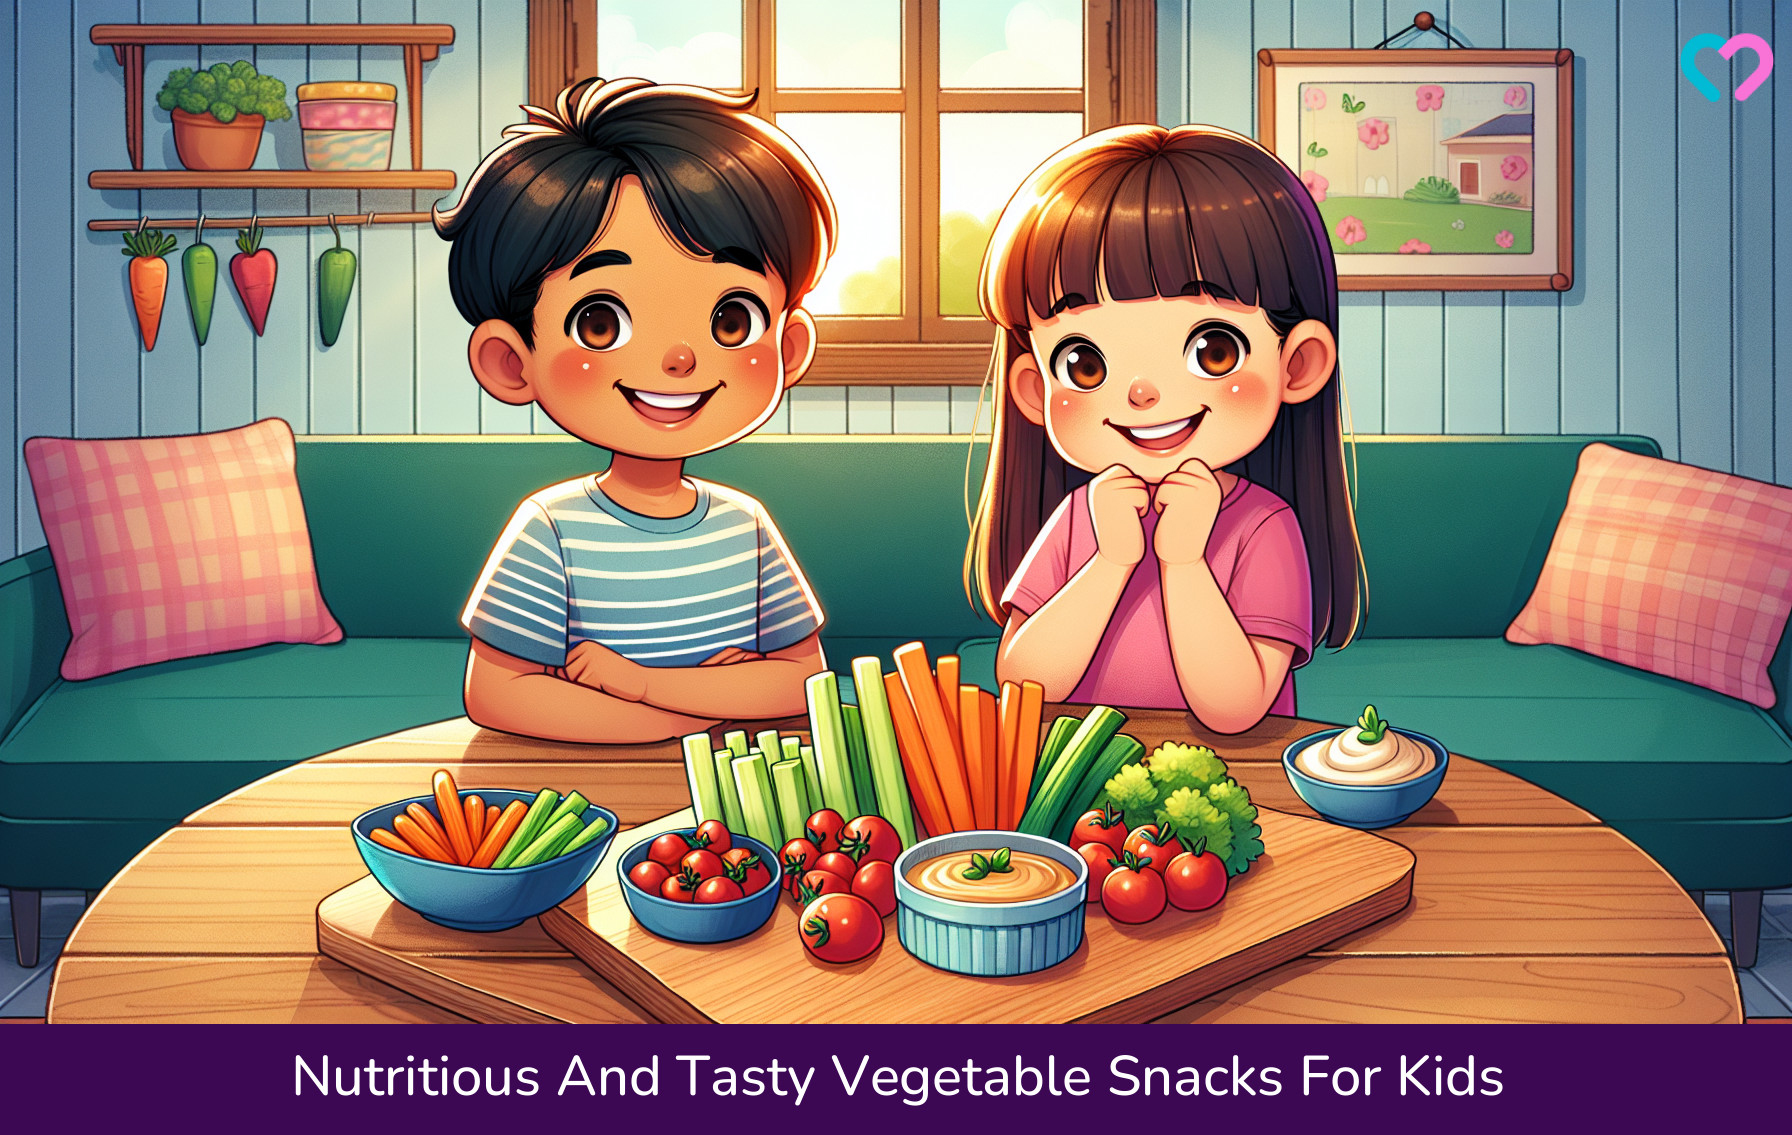 Vegetable Snacks For Kids_illustration